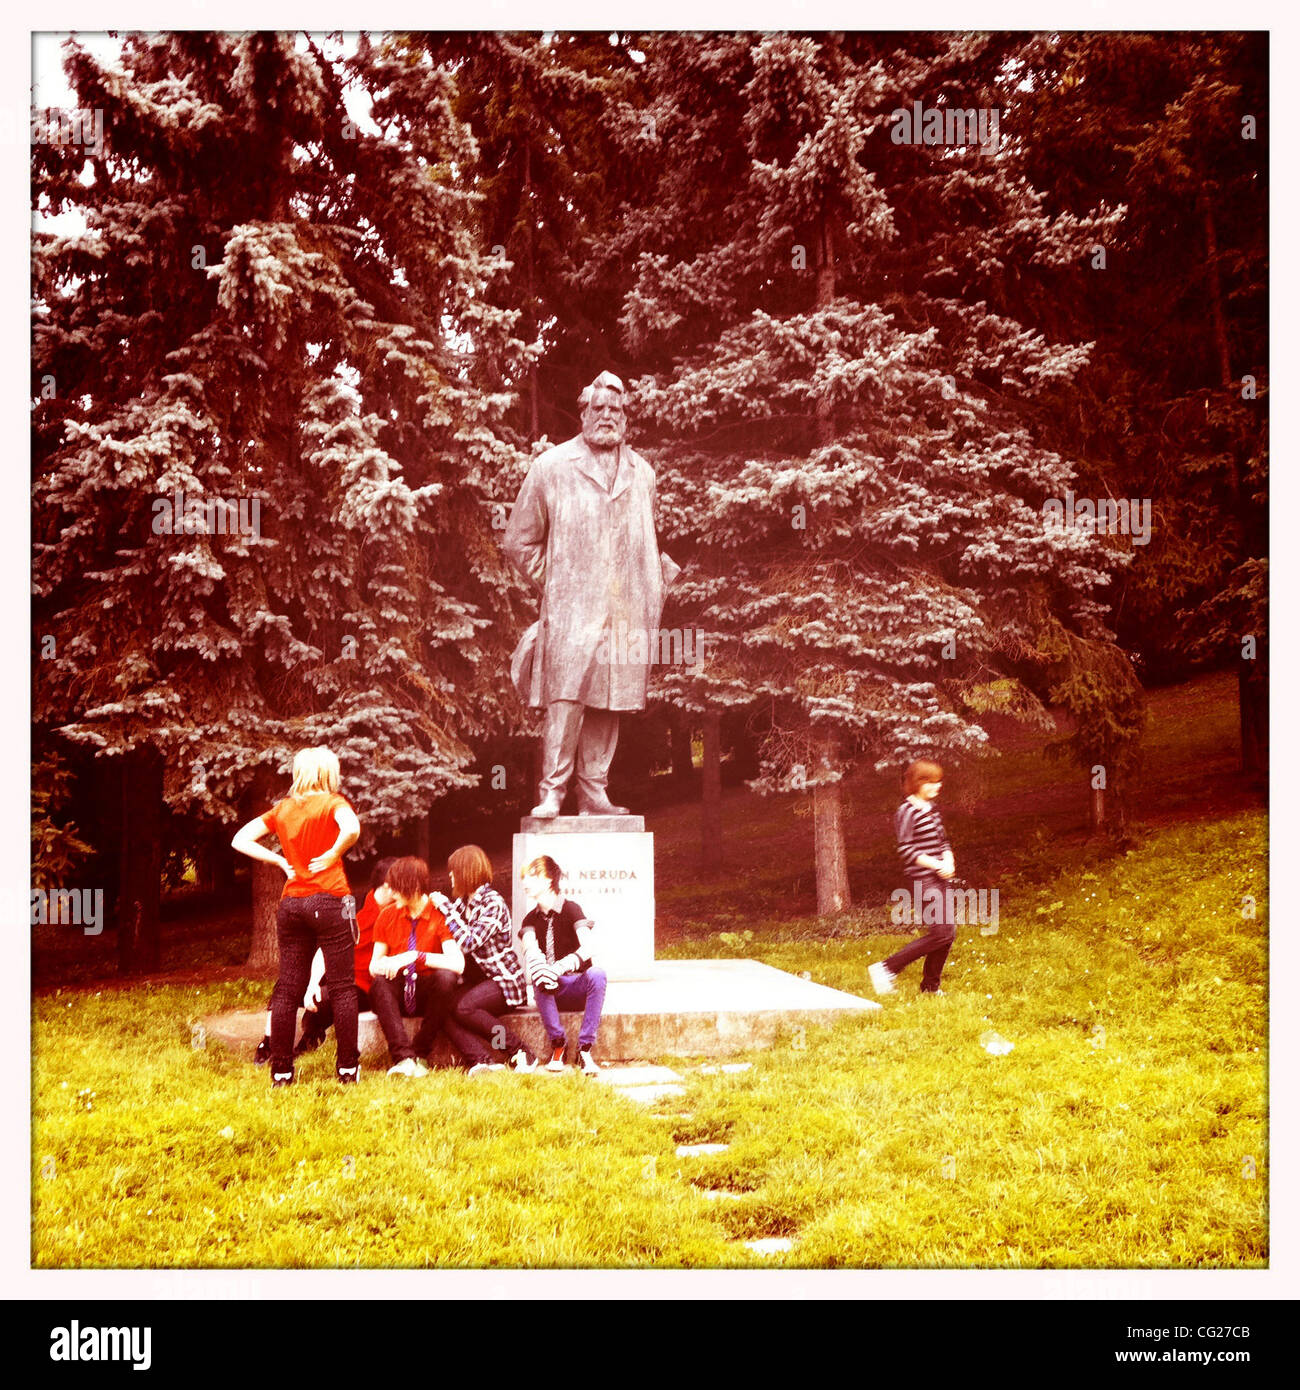 11. August 2011 - Prag, Tschechische Republik - Statue von Karel Hynek Macha, verehrten tschechischer Dichter der Romantik, bekannt vor allem für sein Gedicht "Maj" - Mai auf den Petrin-Hügel, Prag, Tschechische Republik. (Kredit-Bild: © Veronika Lukasova/ZUMAPRESS.com) Stockfoto